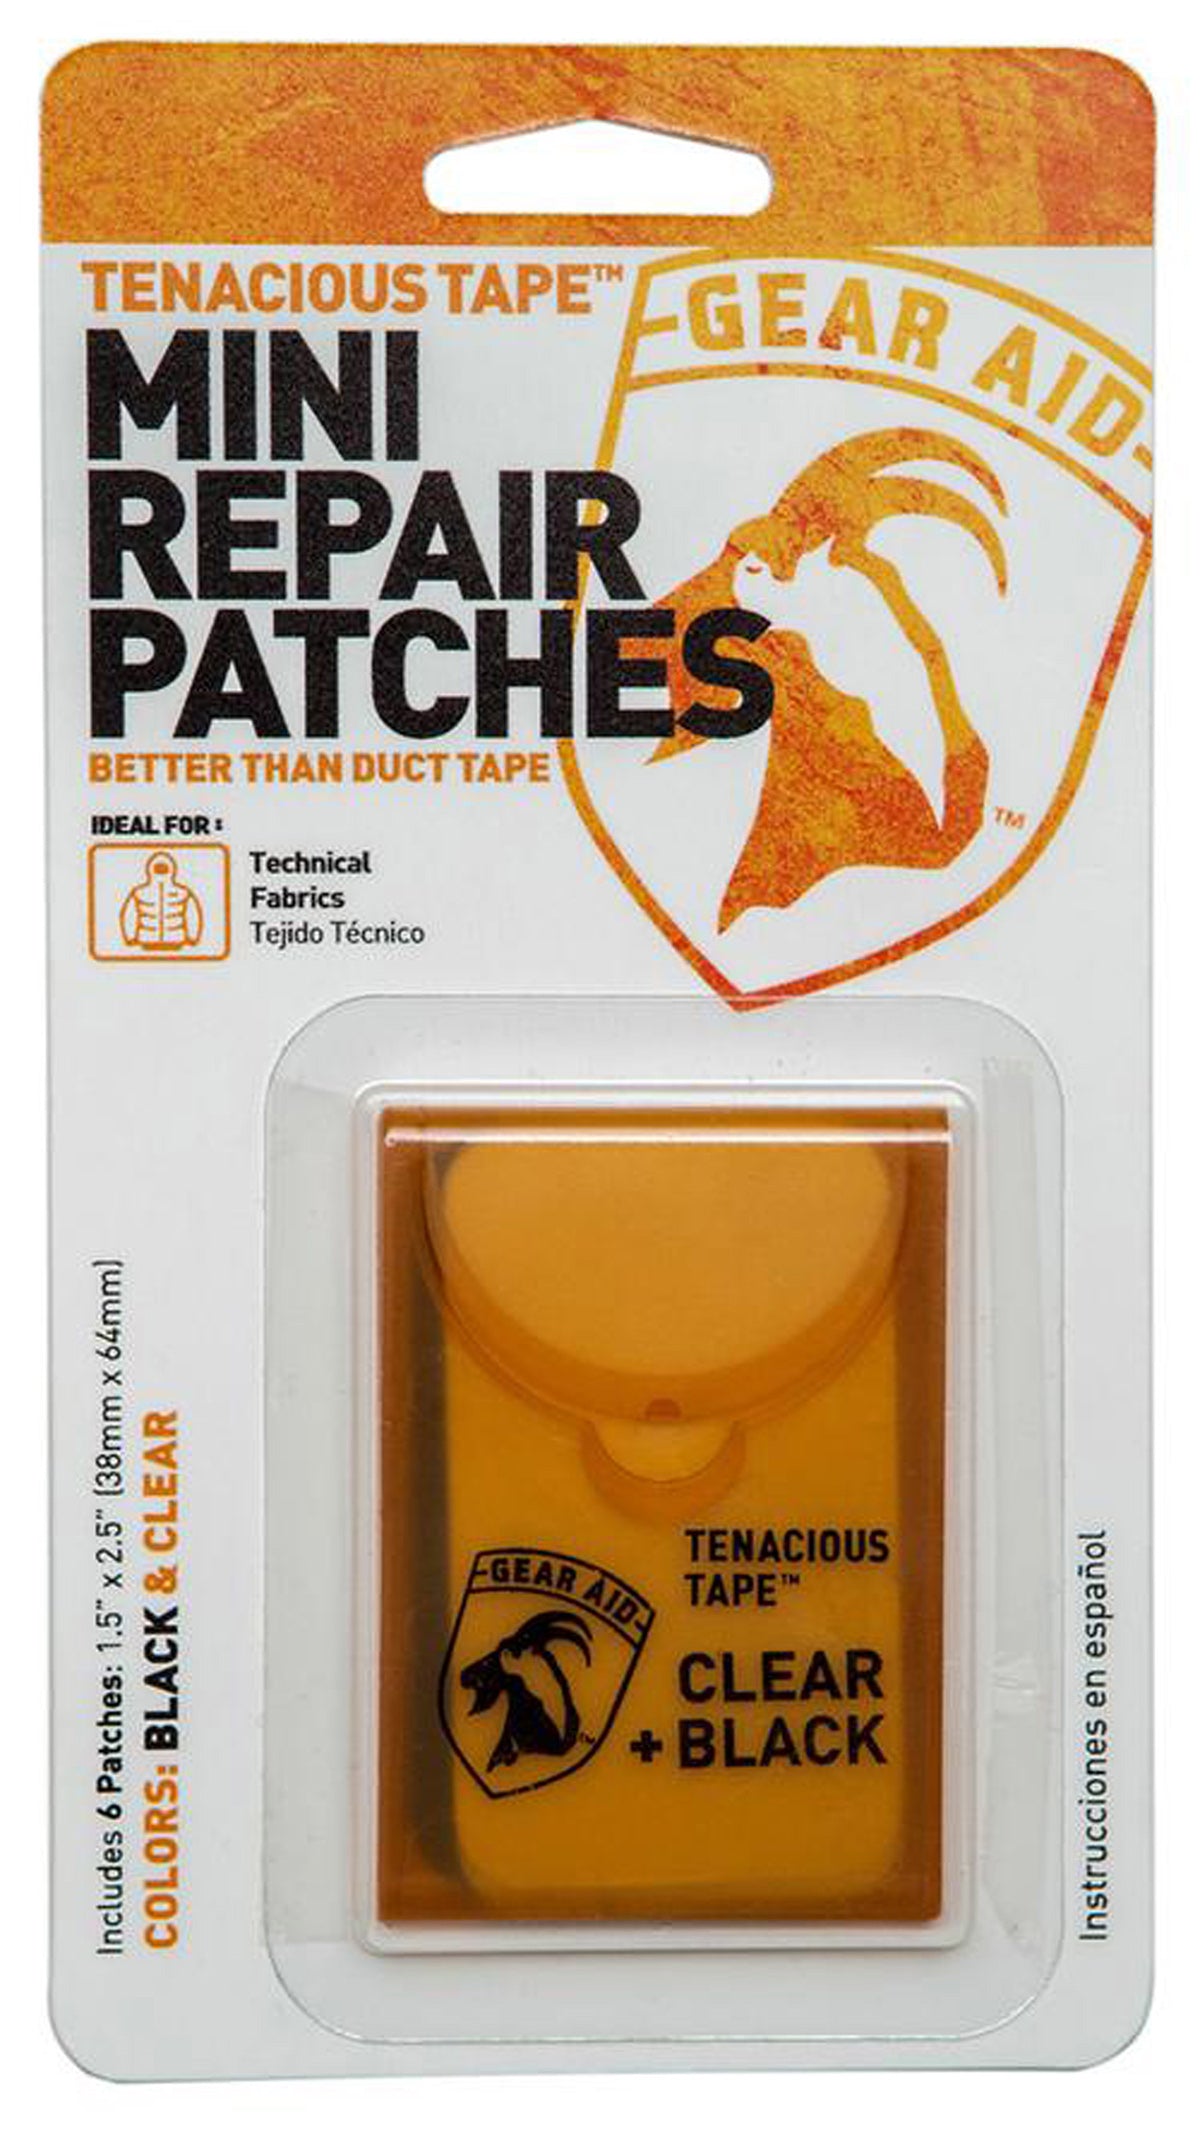 Tenacious Tape Mini Repair Patches D15 MC NETT   